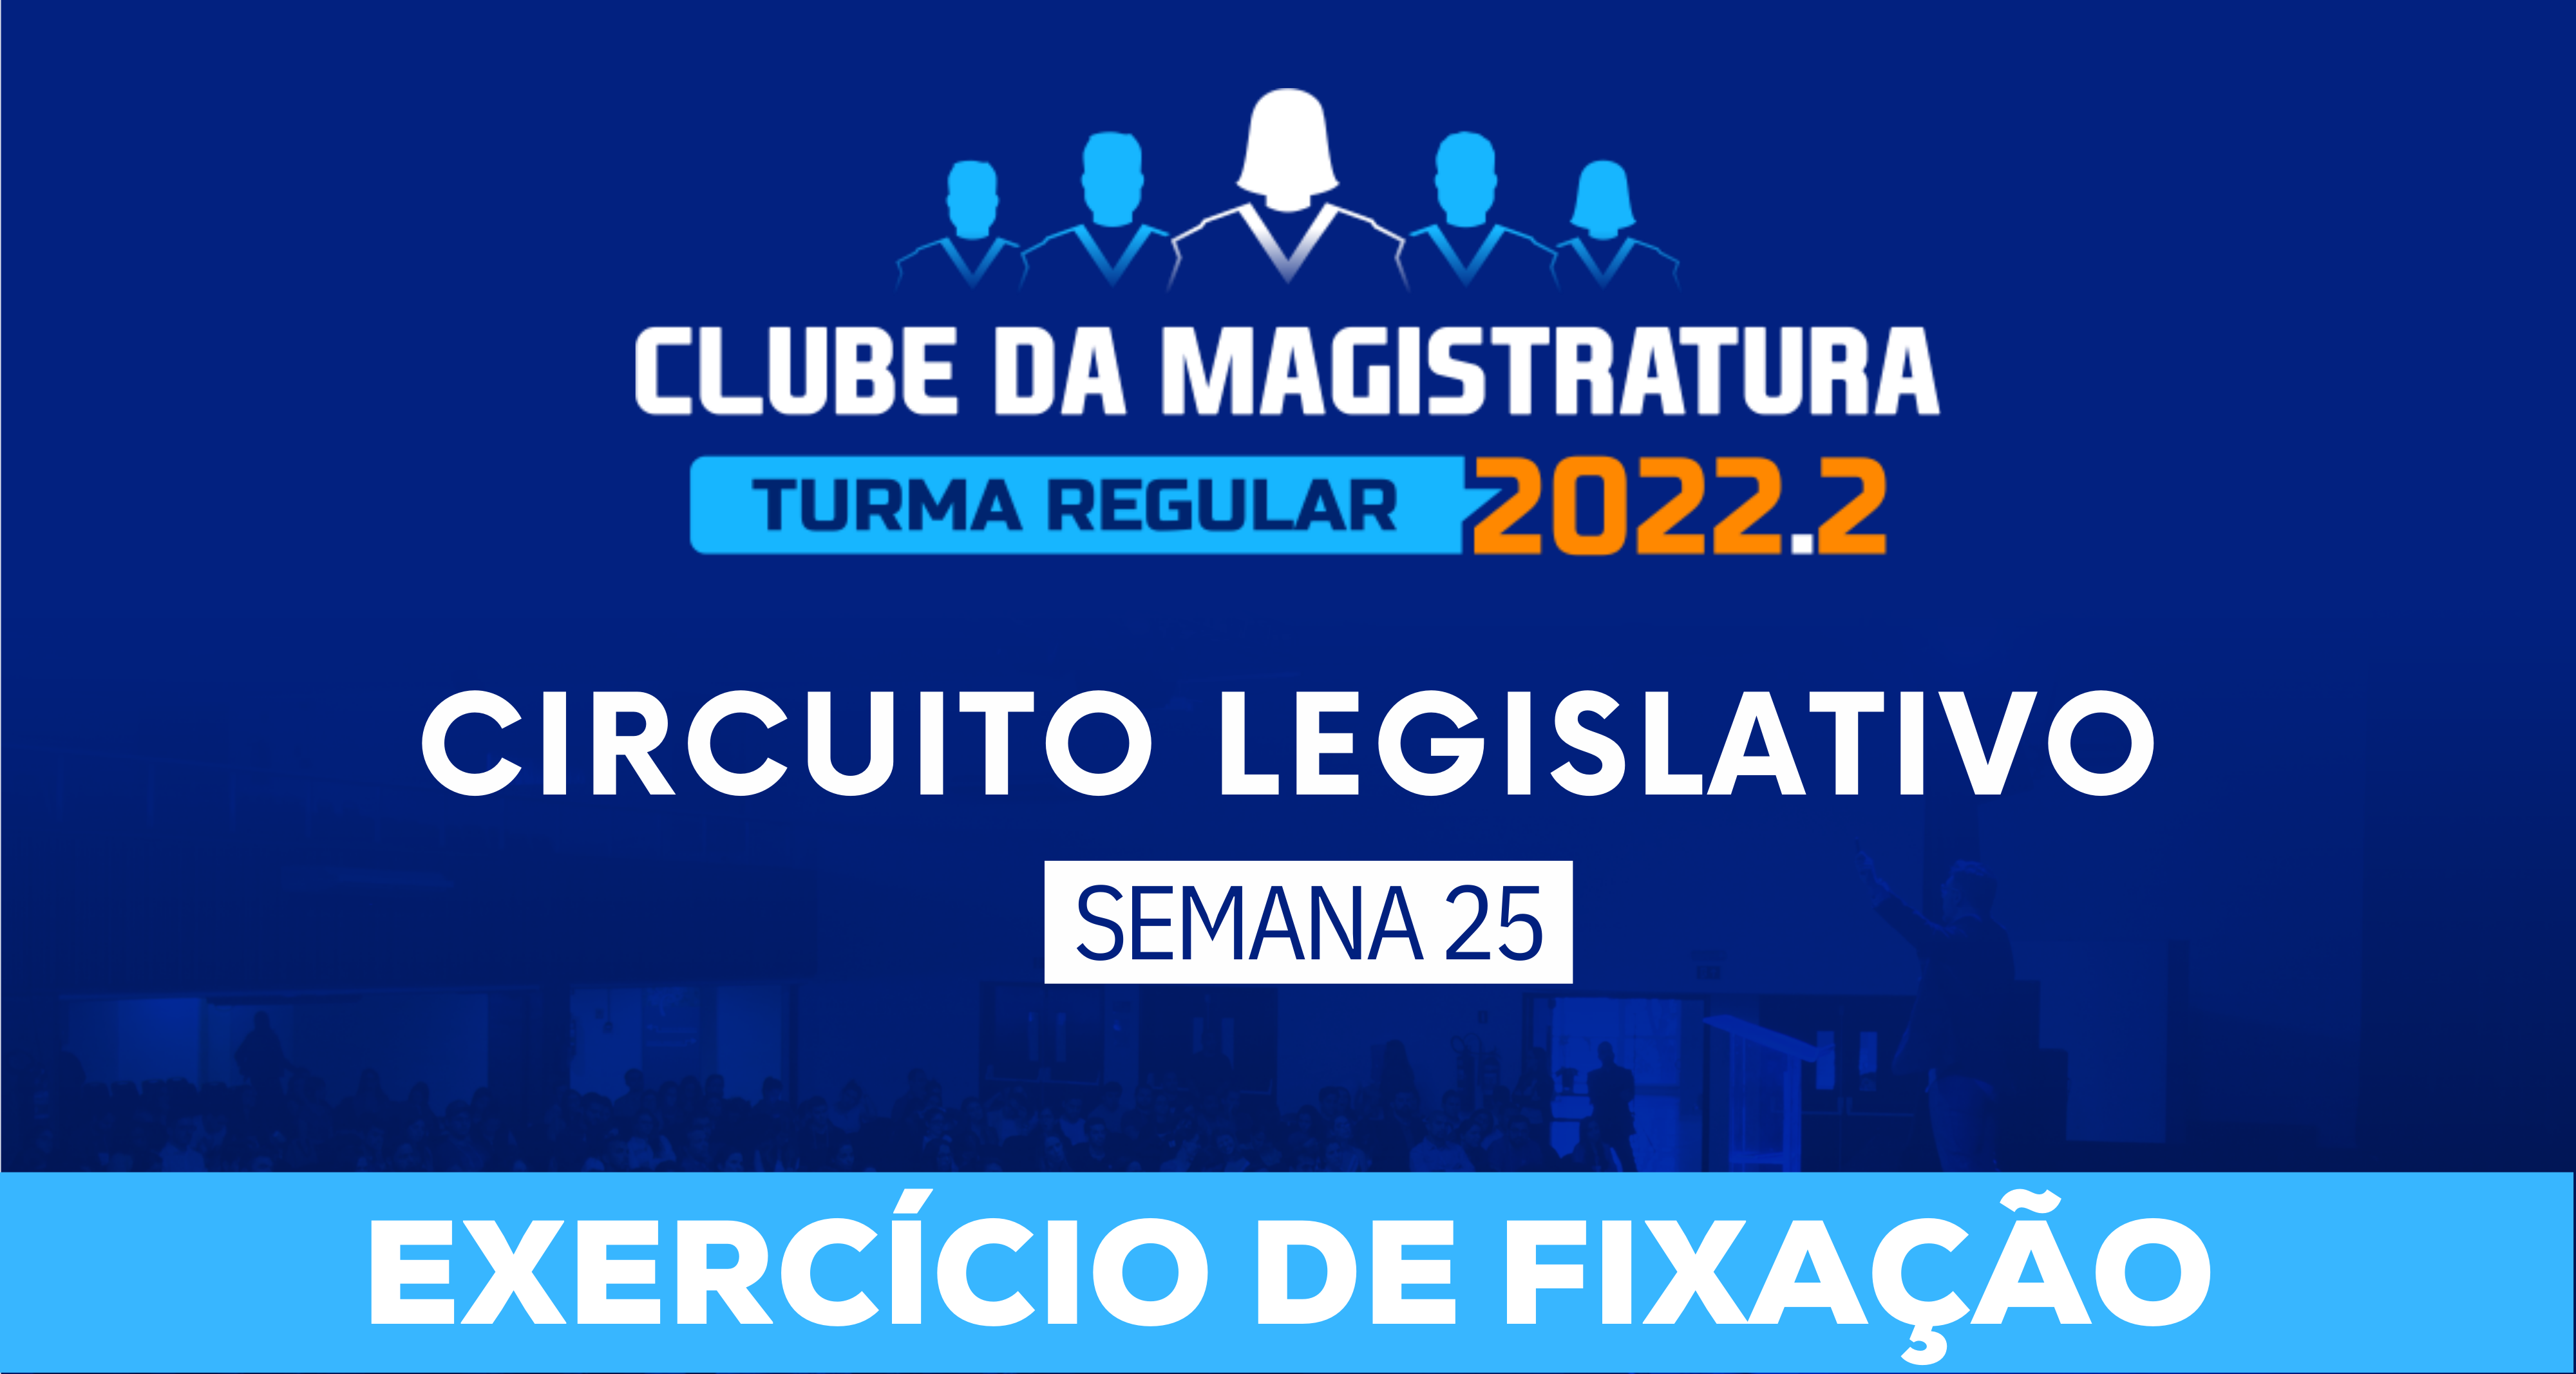 Circuito Legislativo 2022.2 (Clube da Magistratura - Semana 25)